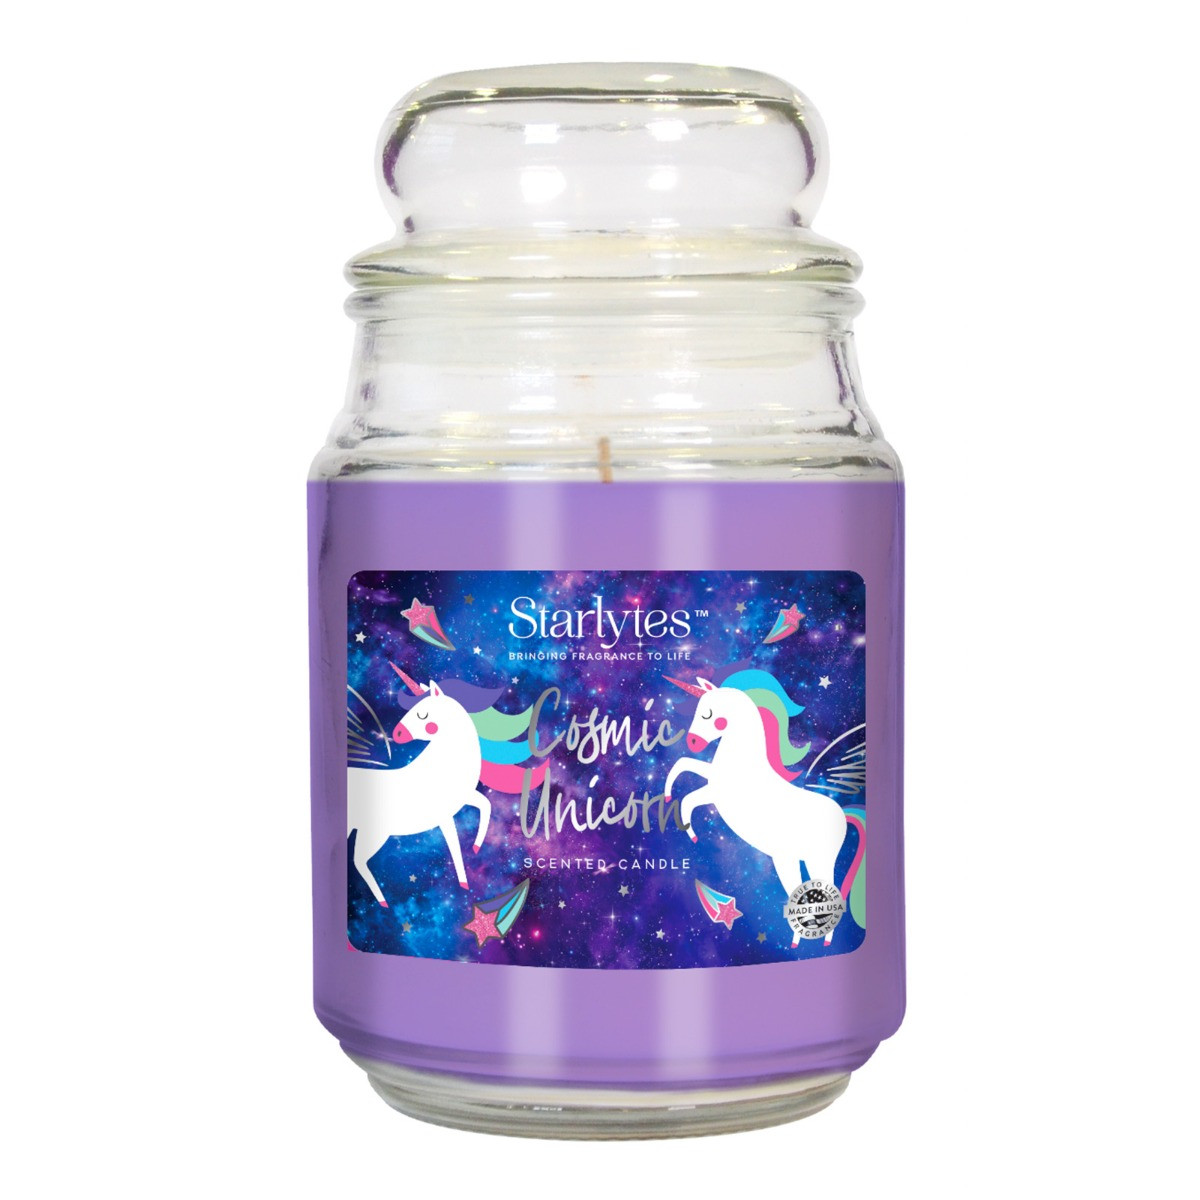 Starlytes 18oz Jar Candle - Cosmic Unicorn>